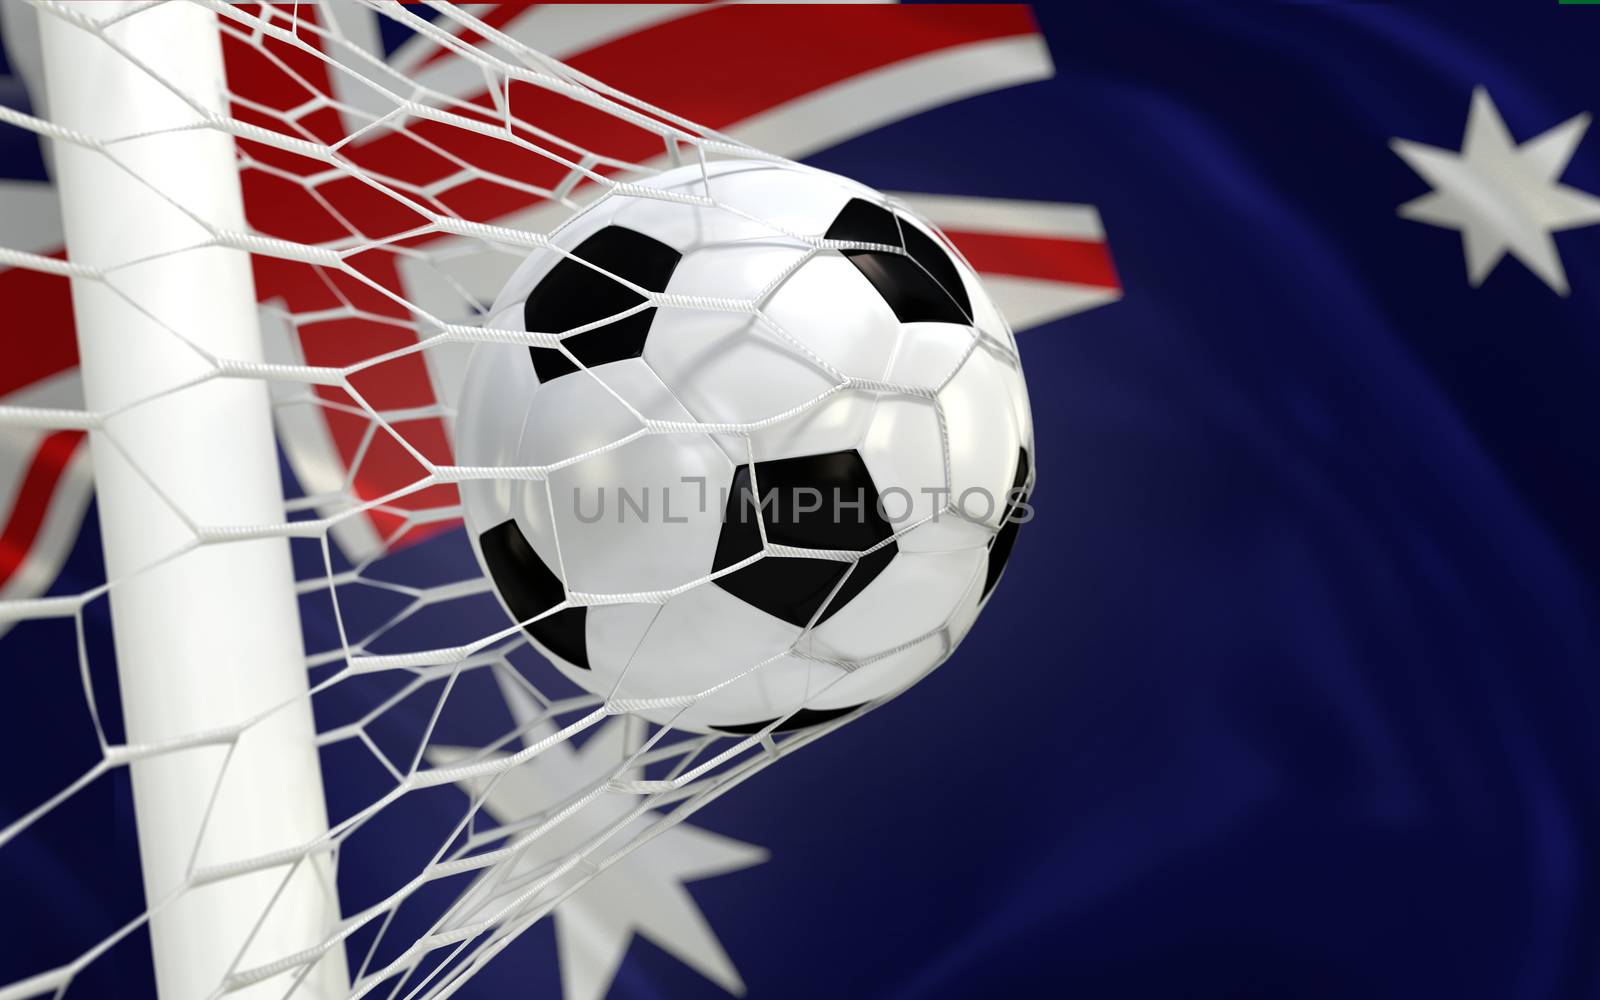 Australia waving flag and soccer ball in goal net by Barbraford